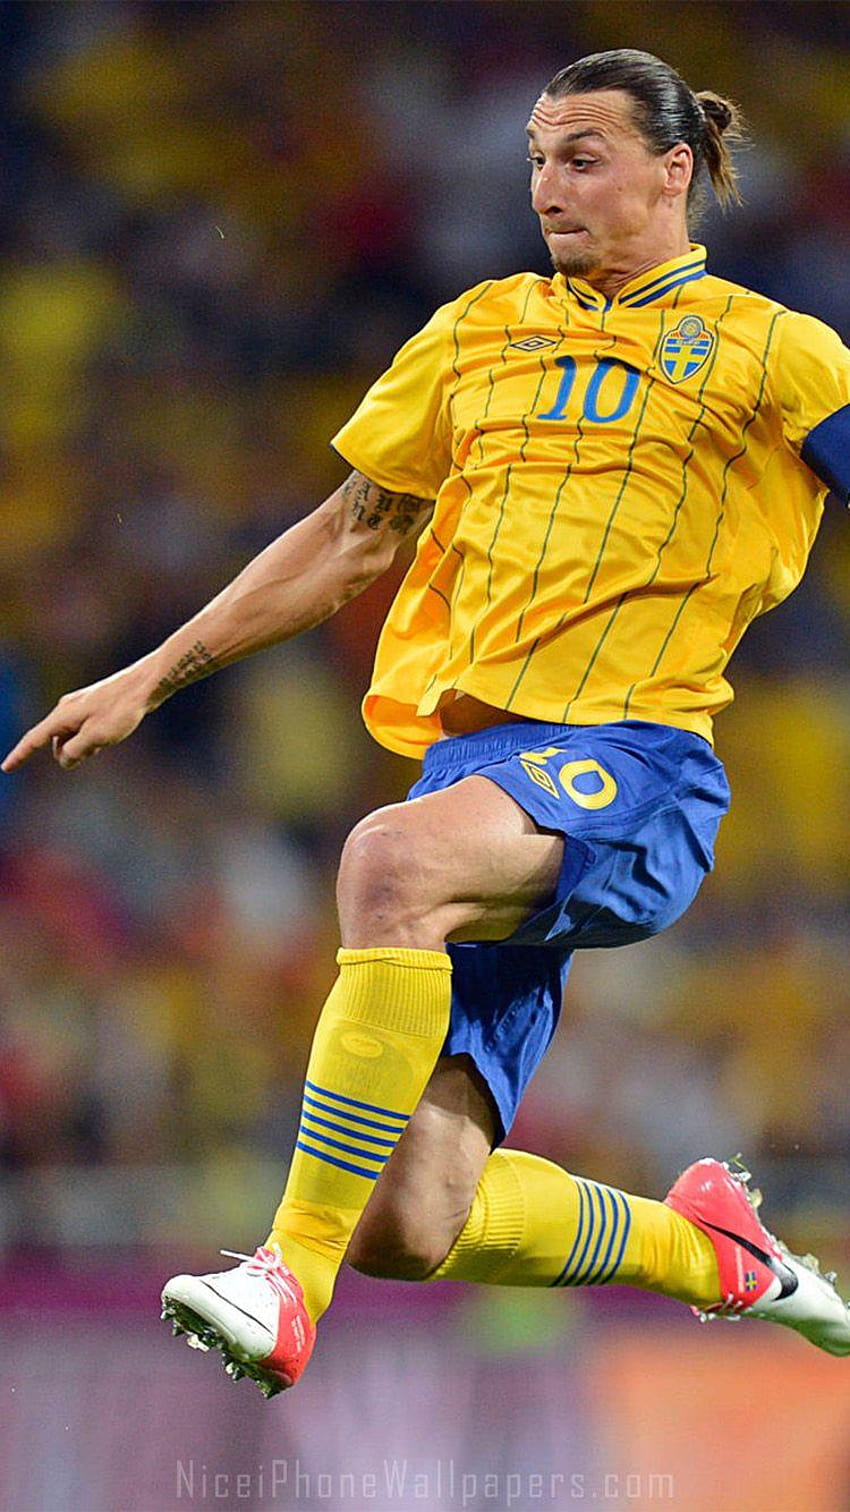 ズラタン イブラヒモビッチ iPhone 6/6 プラスと背景、サッカー スウェーデン代表チーム HD電話の壁紙